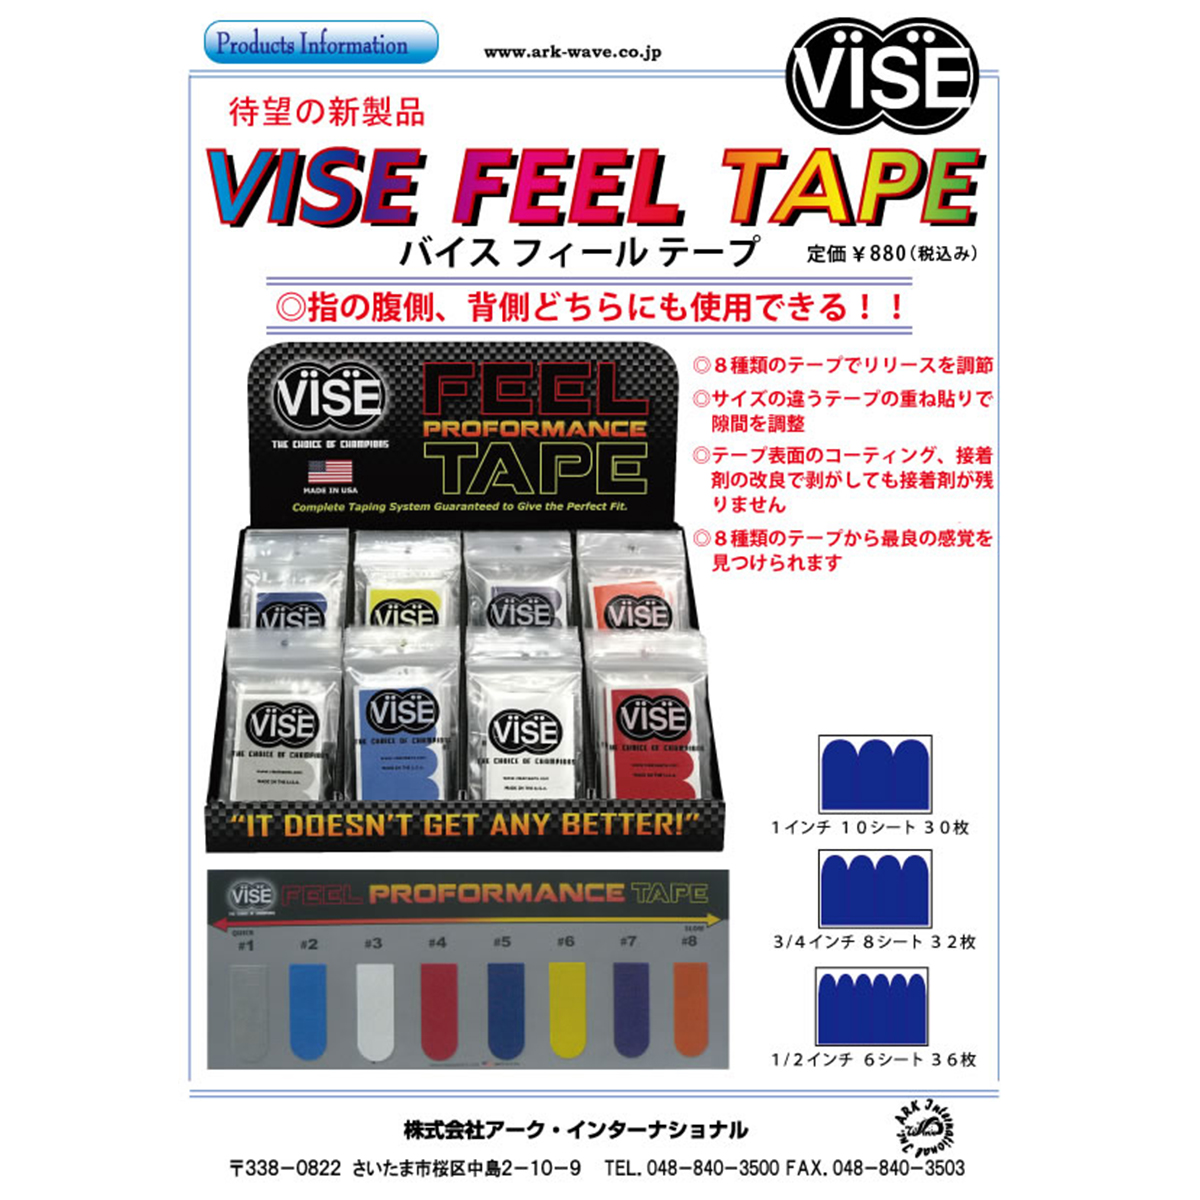 【12袋セット】VISE フィールテープ#5(青色) - ウインドウを閉じる